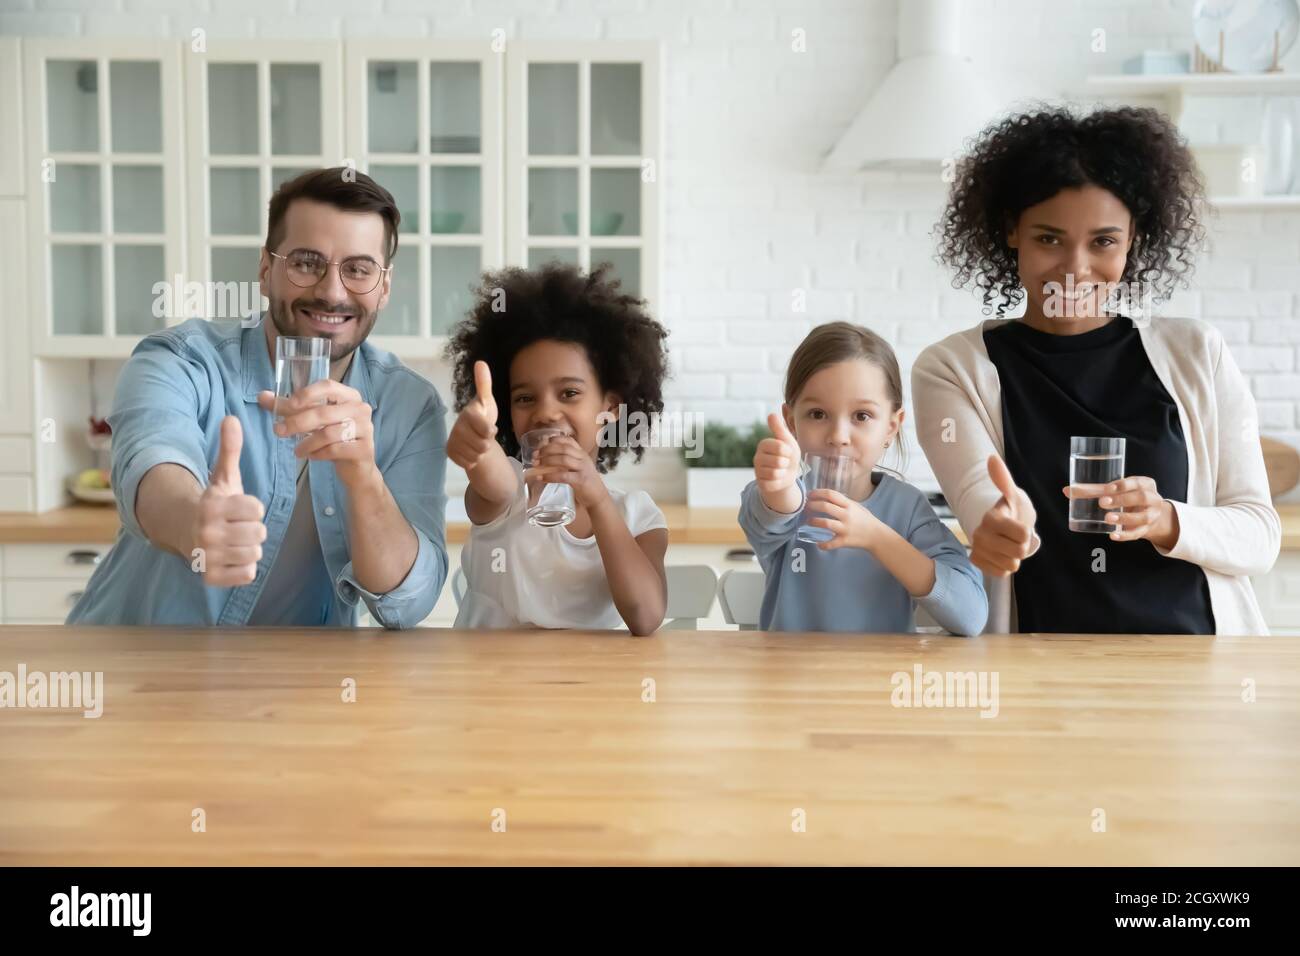 Glückliche gesunde gemischte Rasse Familie empfehlen Trinkwasser. Stockfoto